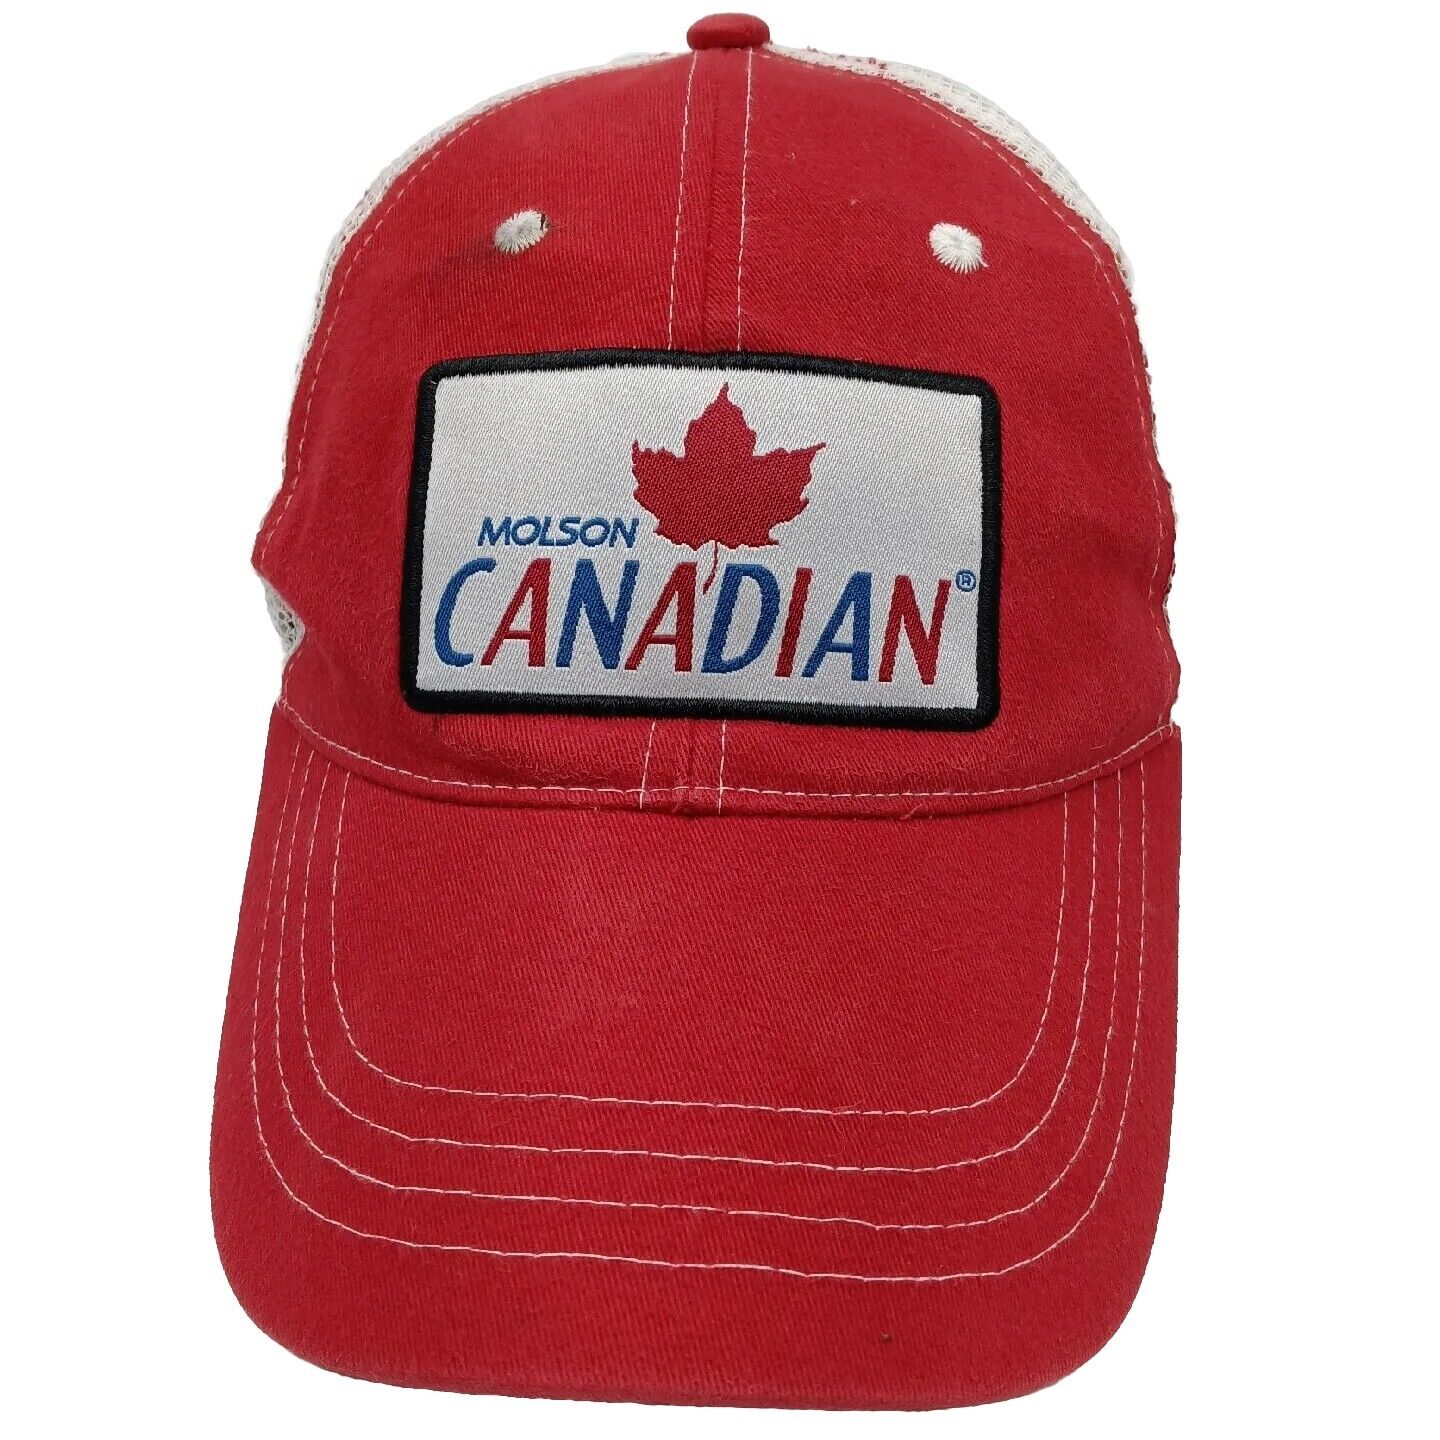 Vtg Molson Canadian Red White Trucker Snapback Mesh Hat Baseball Cap